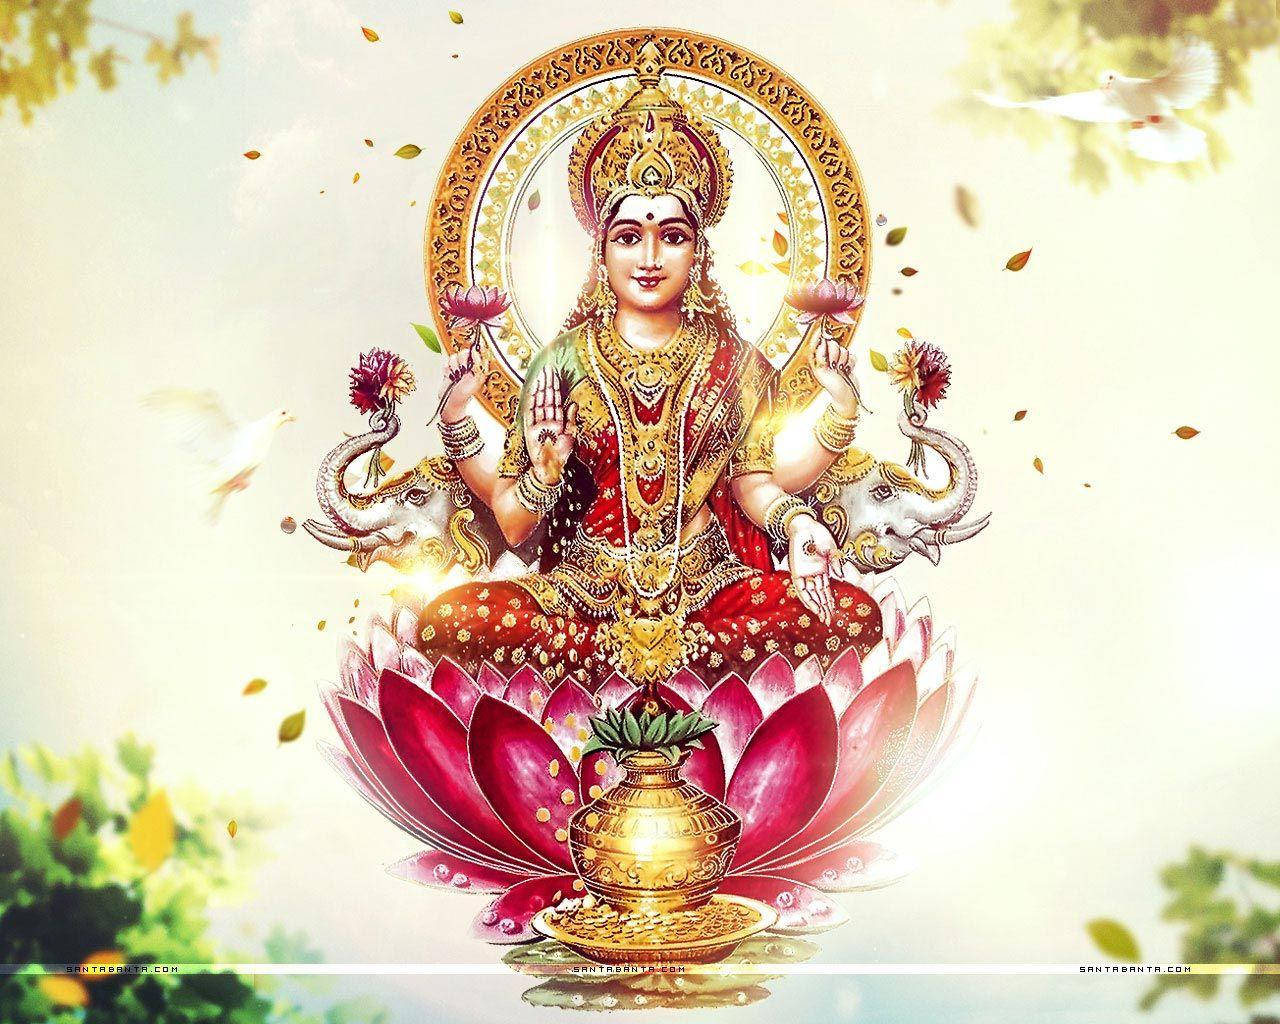 Lakshmi Of Hindu Mythology Background